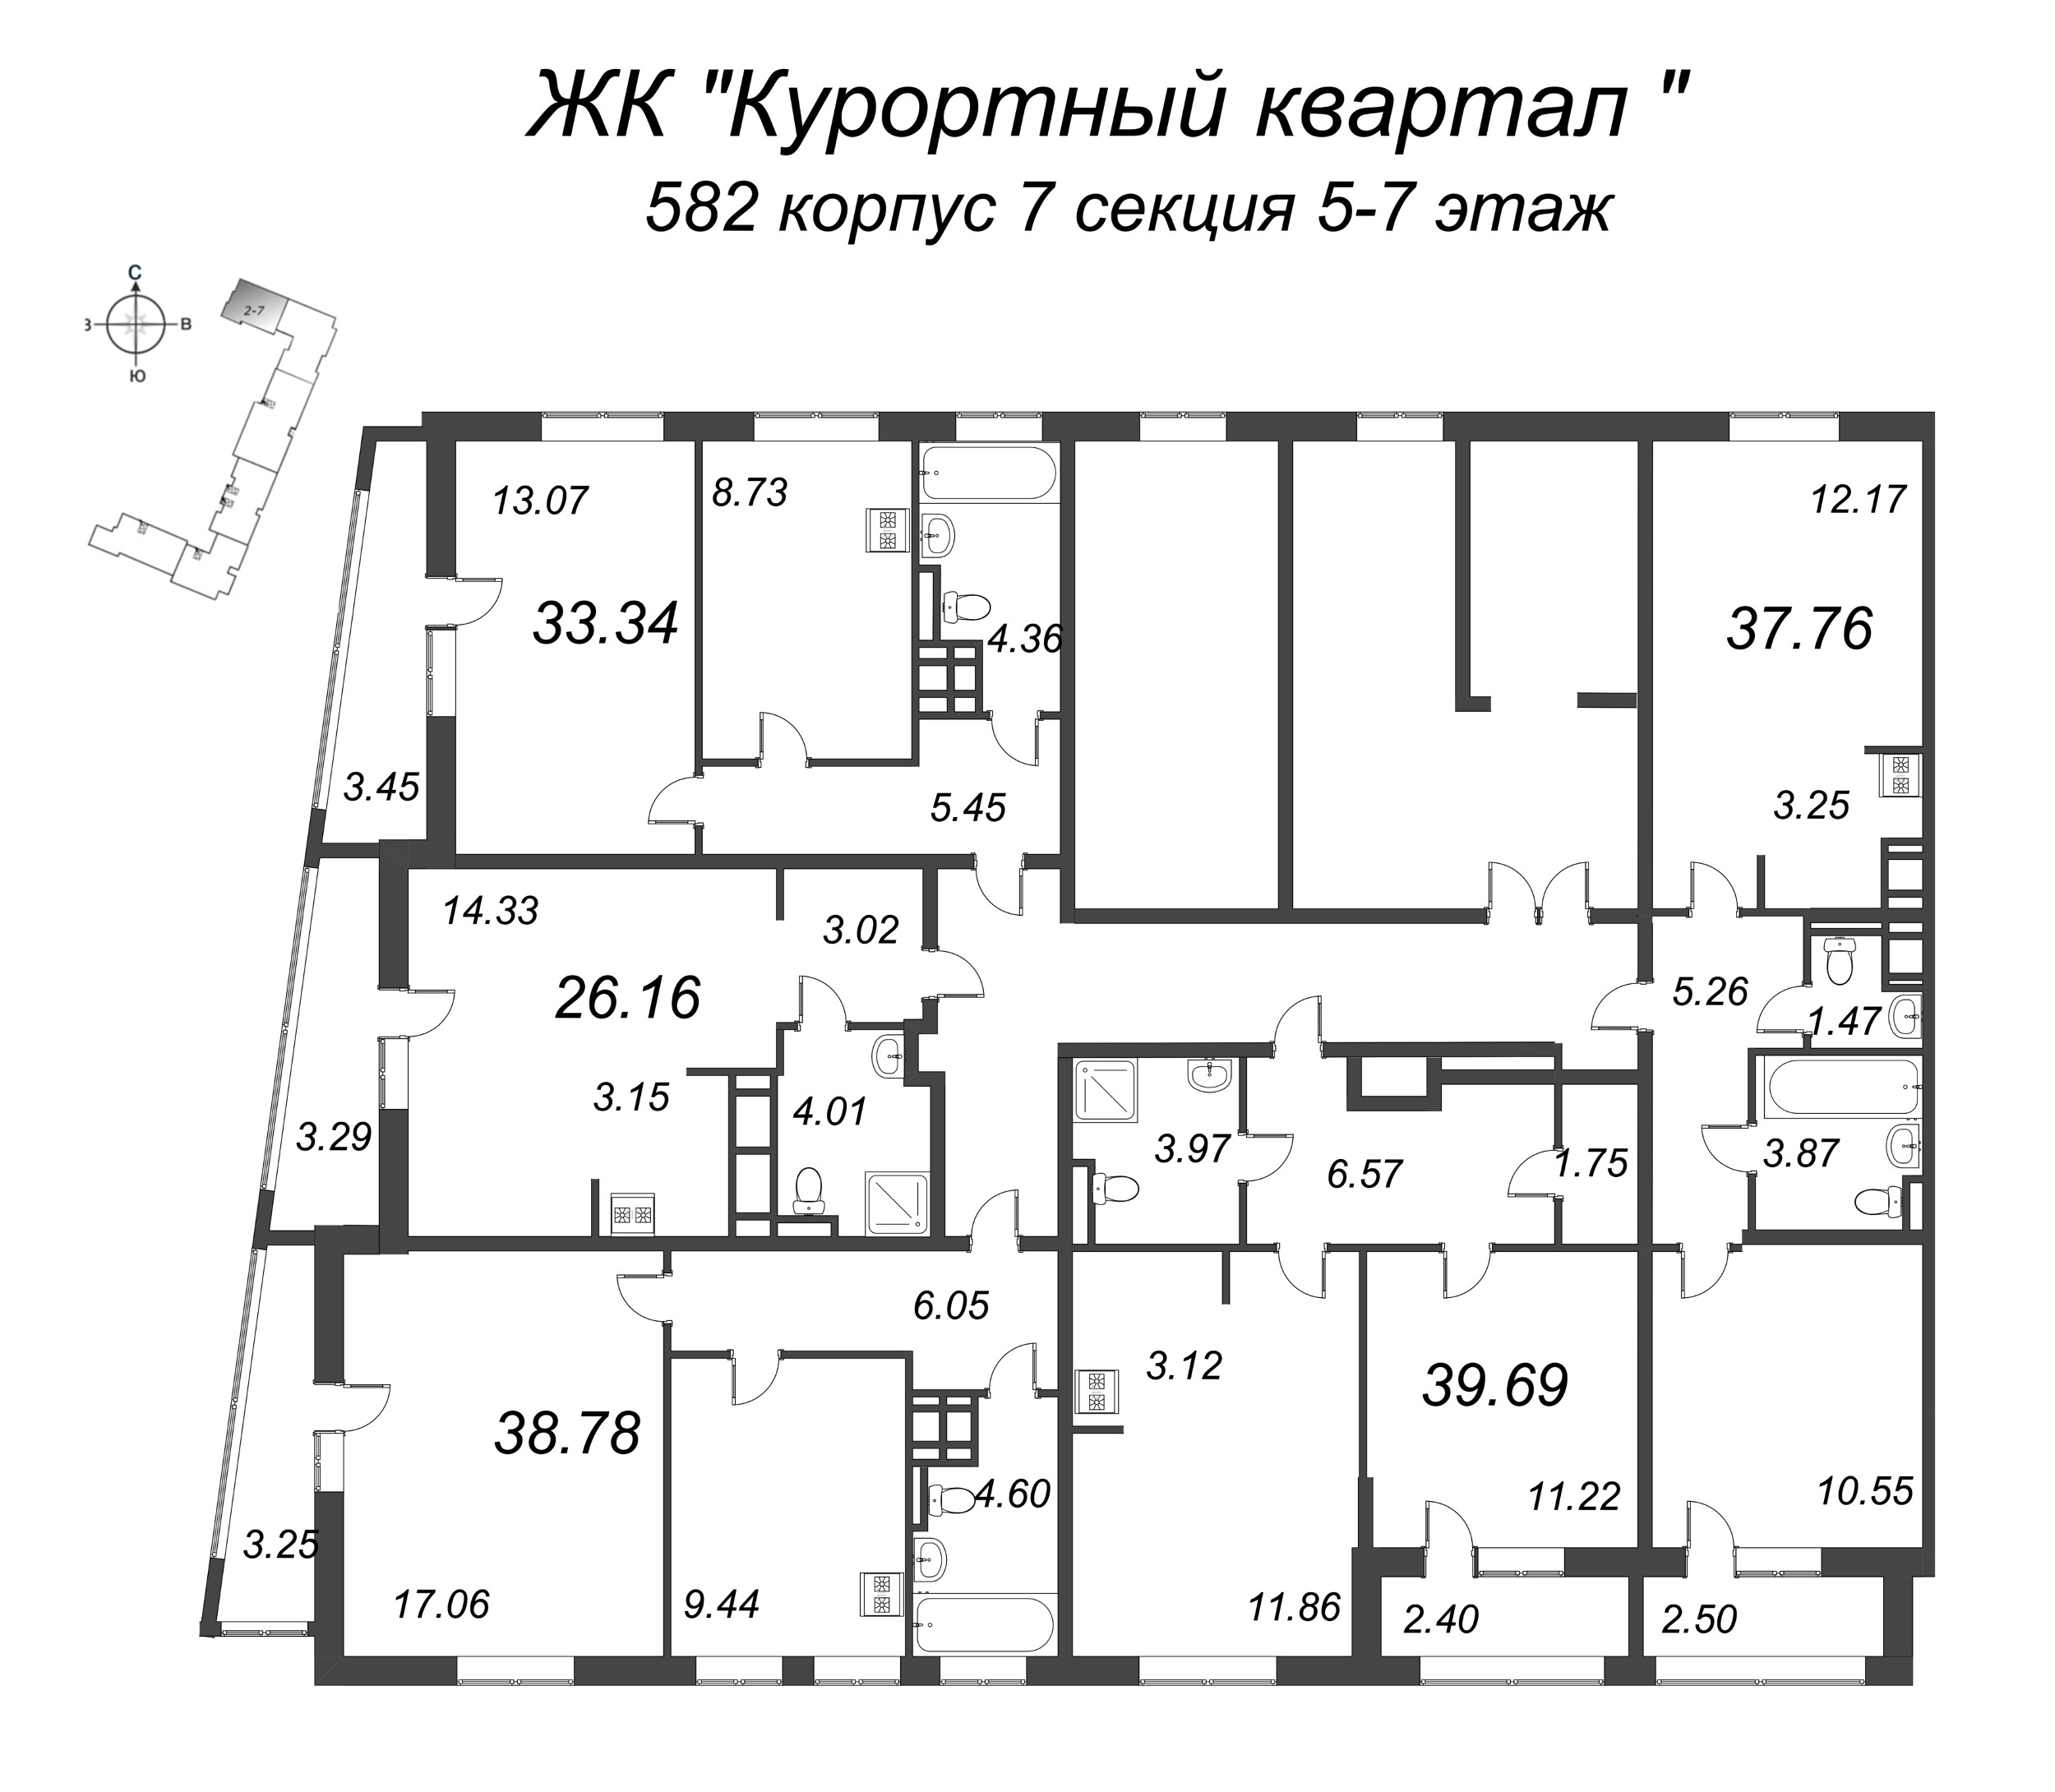 1-комнатная квартира, 39.69 м² в ЖК "Курортный Квартал" - планировка этажа